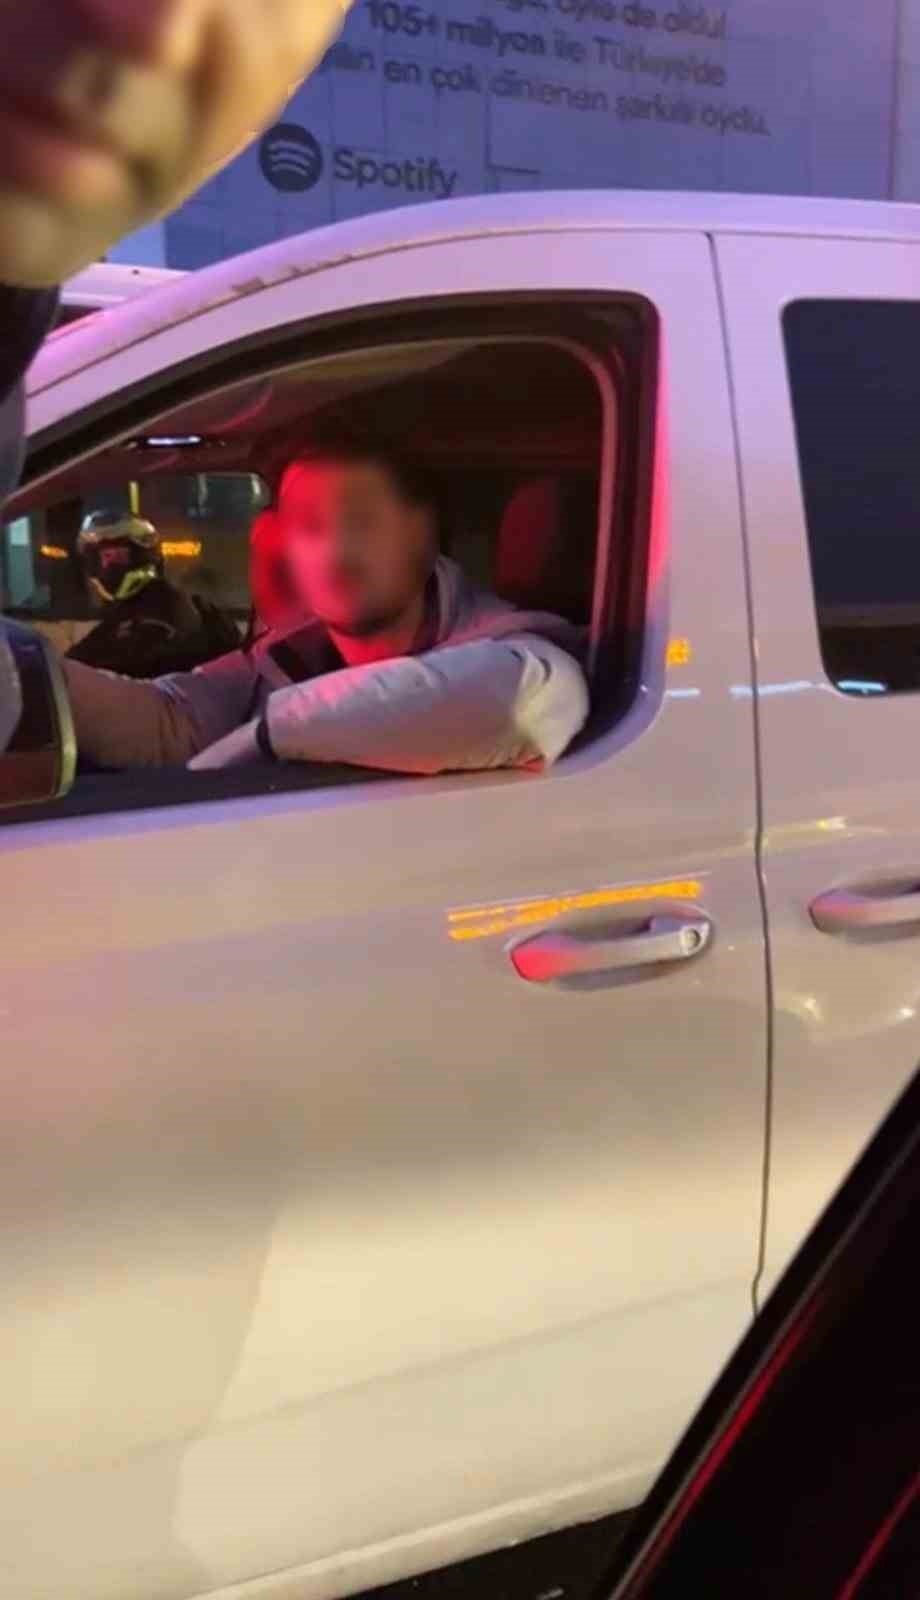 İstanbul’da trafikte iki sürücünün “erkek misin?” kavgası kamerada
